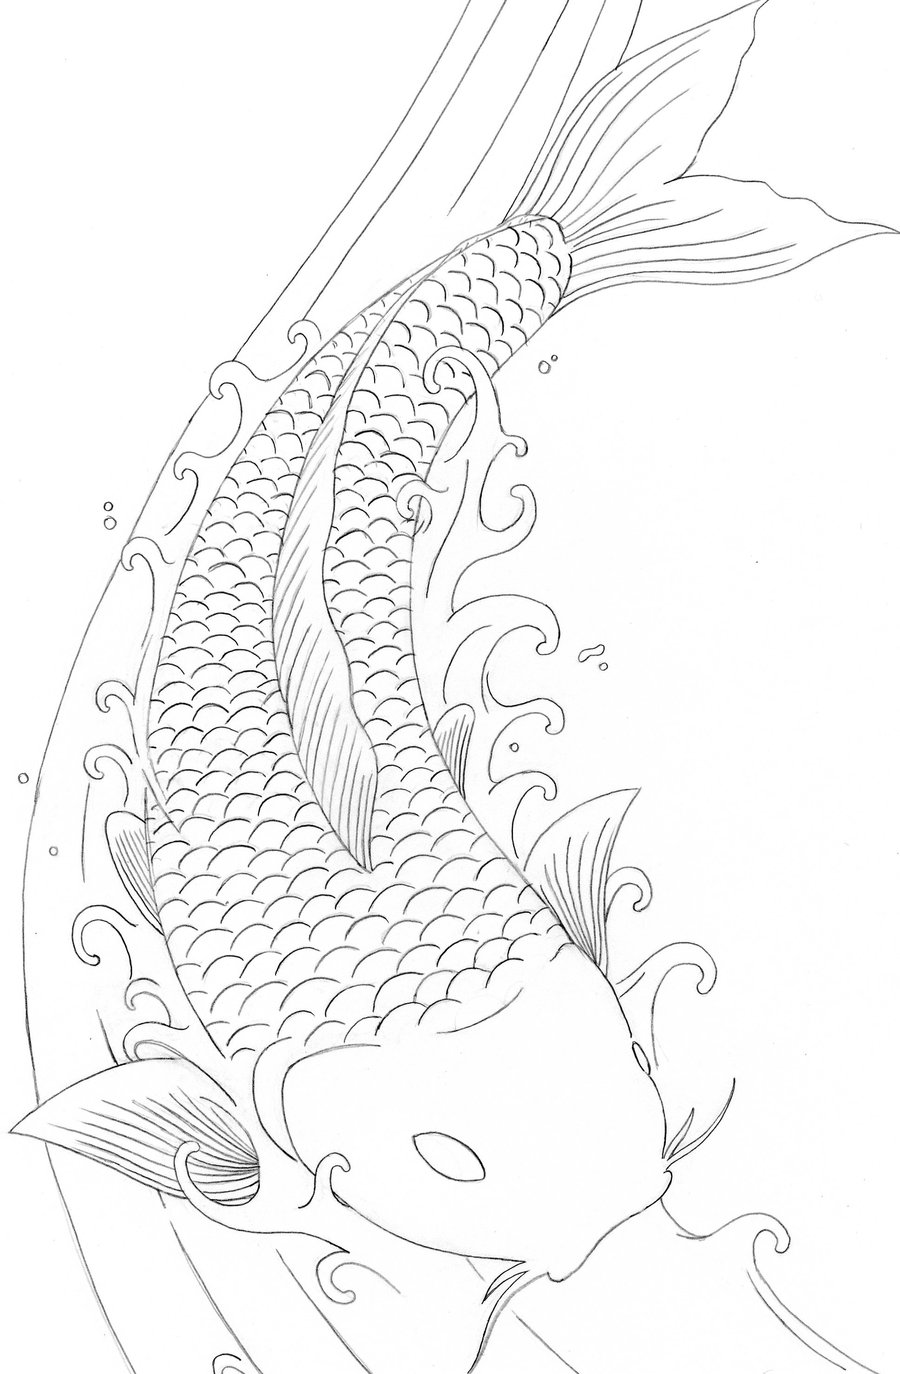 koi-fish-printable-image-coloring-pages-koi-fish-printable-dot-drawing